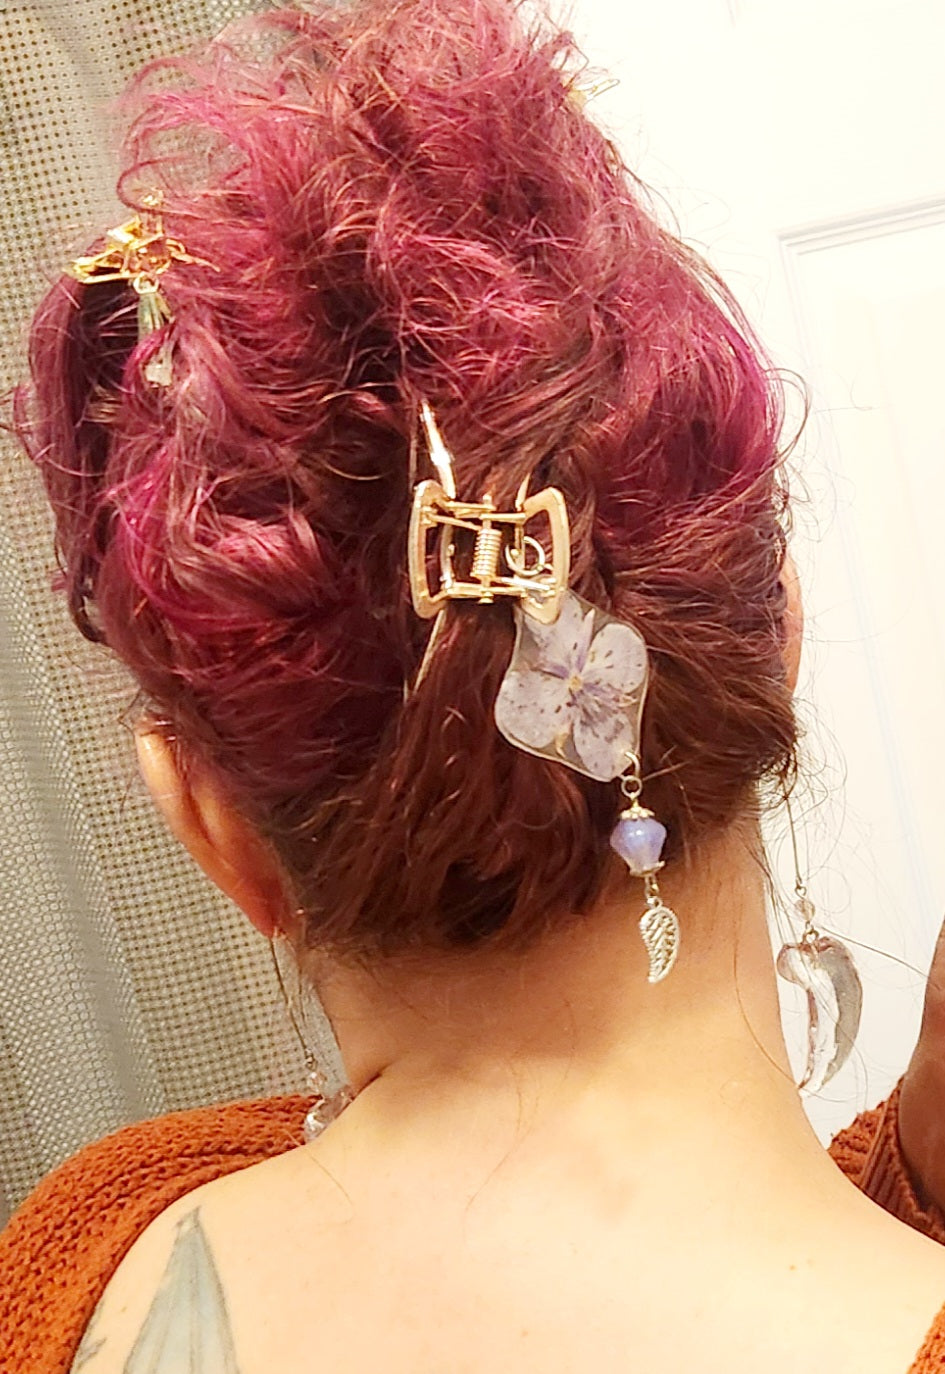 Hair clips with tundra gems